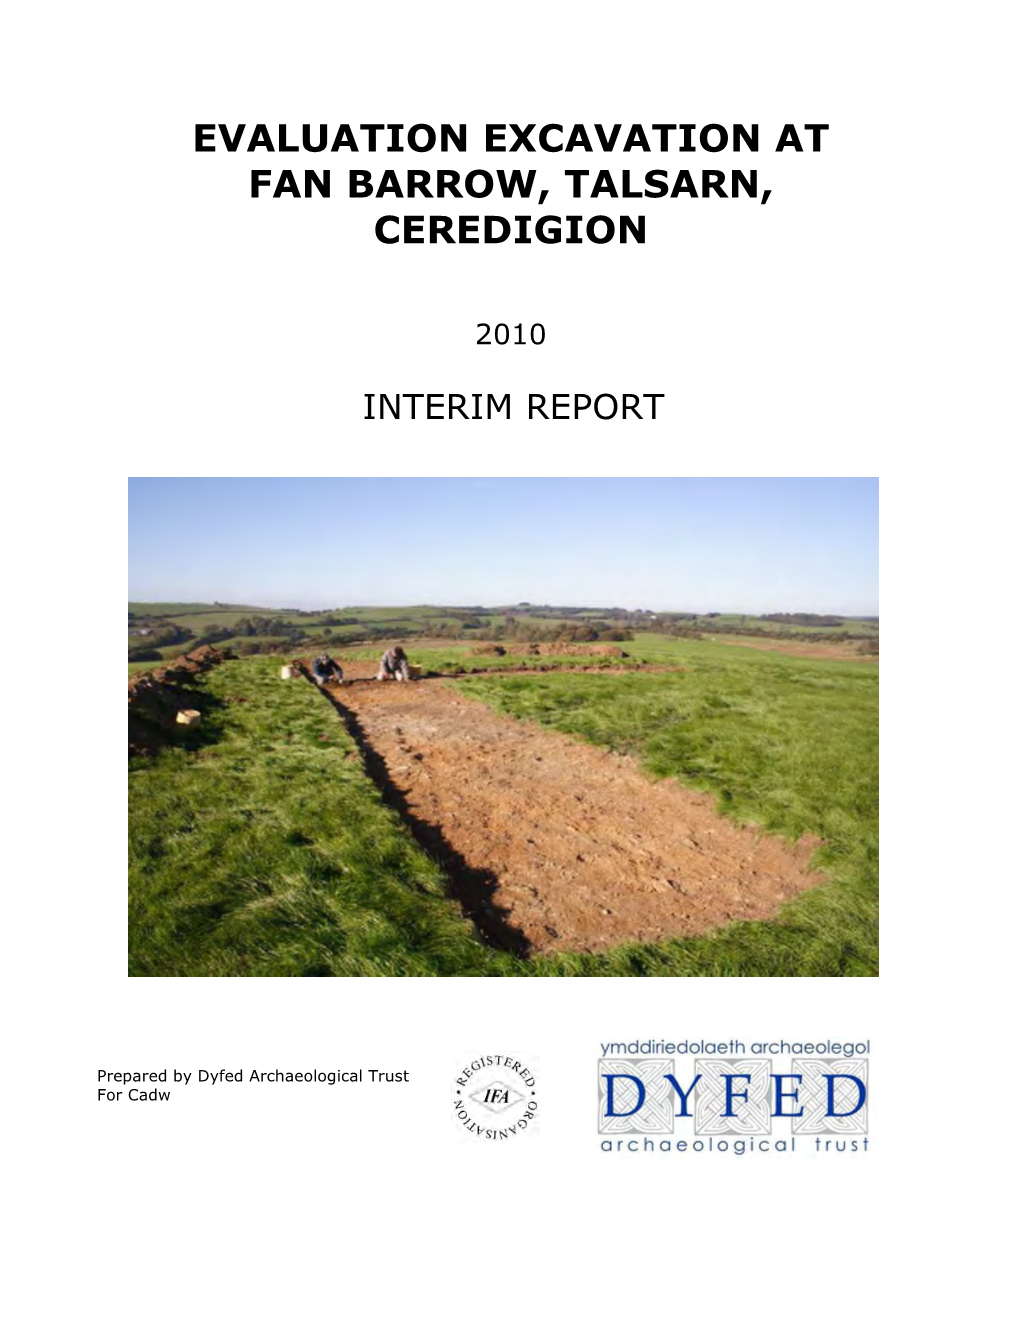 Fan Barrow Evaluation Excavation Interim Report 2010